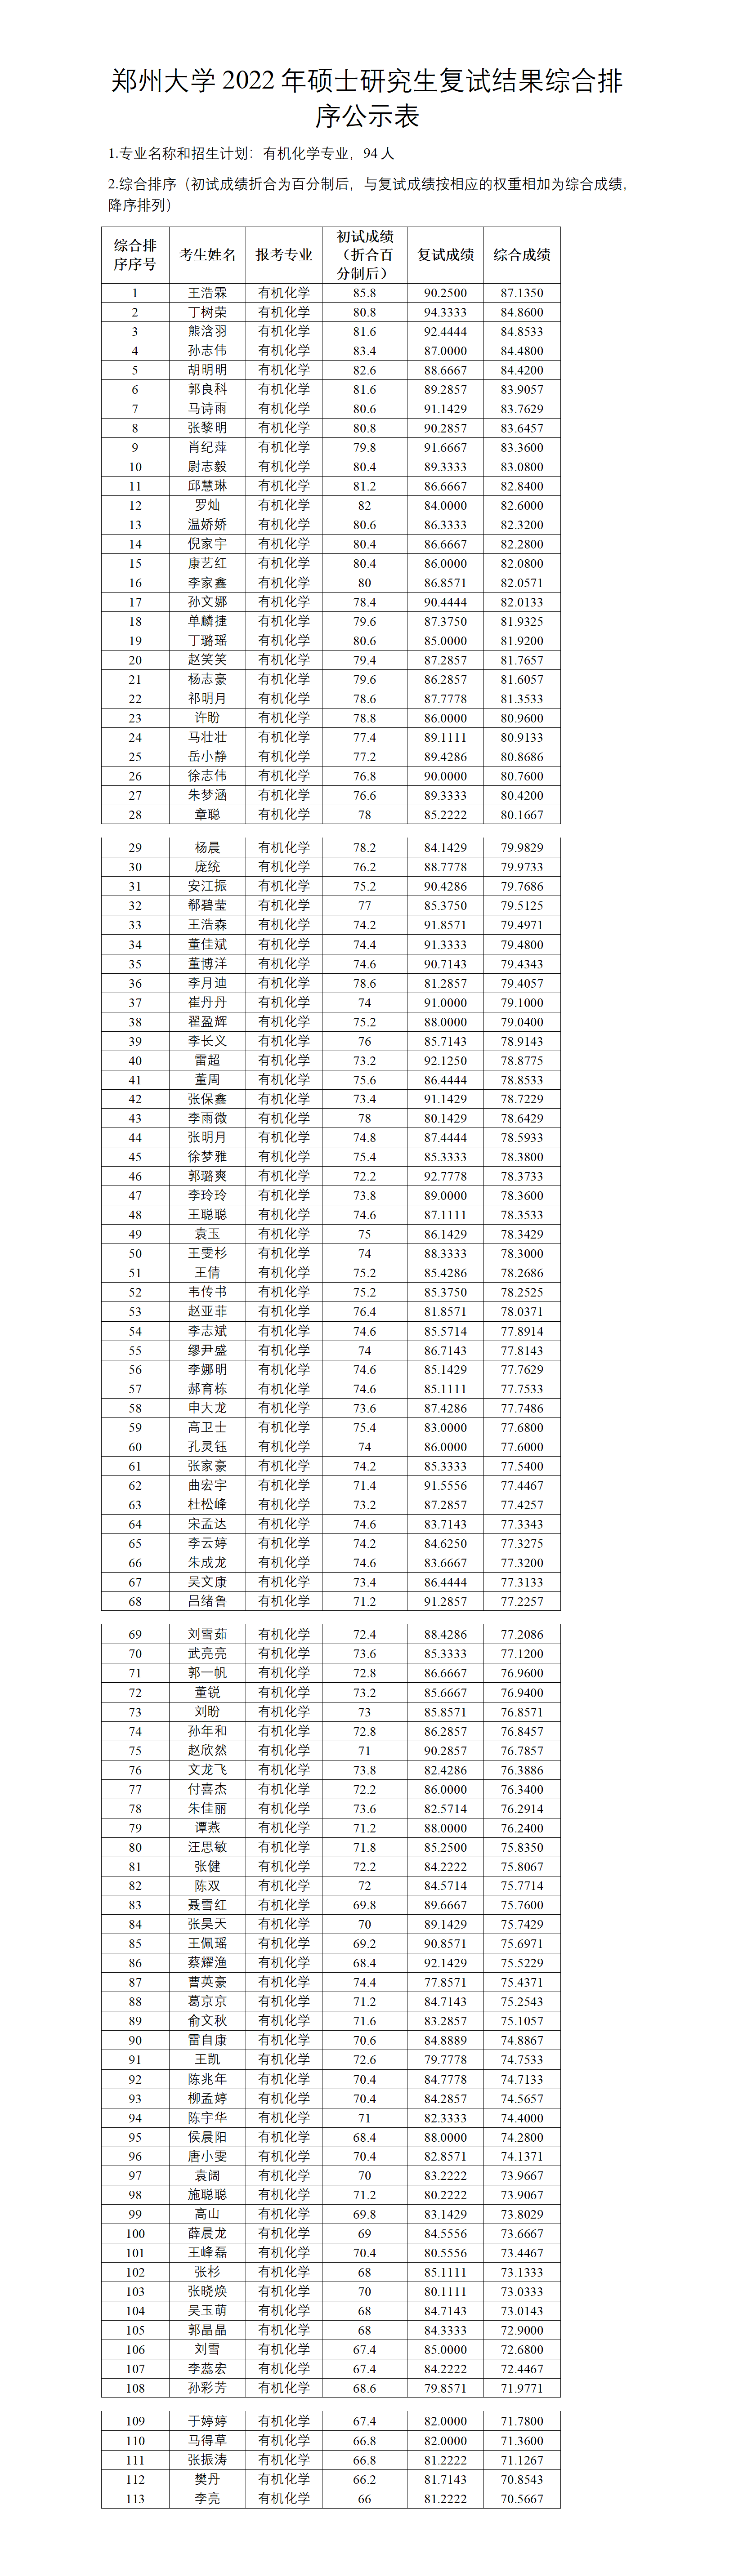 郑州大学2022年硕士研究生复试结果综合排序公示表（有机化学）.docx; filename=utf-8''郑州大学2022年硕士研究生复试结果综合排序公示表（有机化学）_01.png